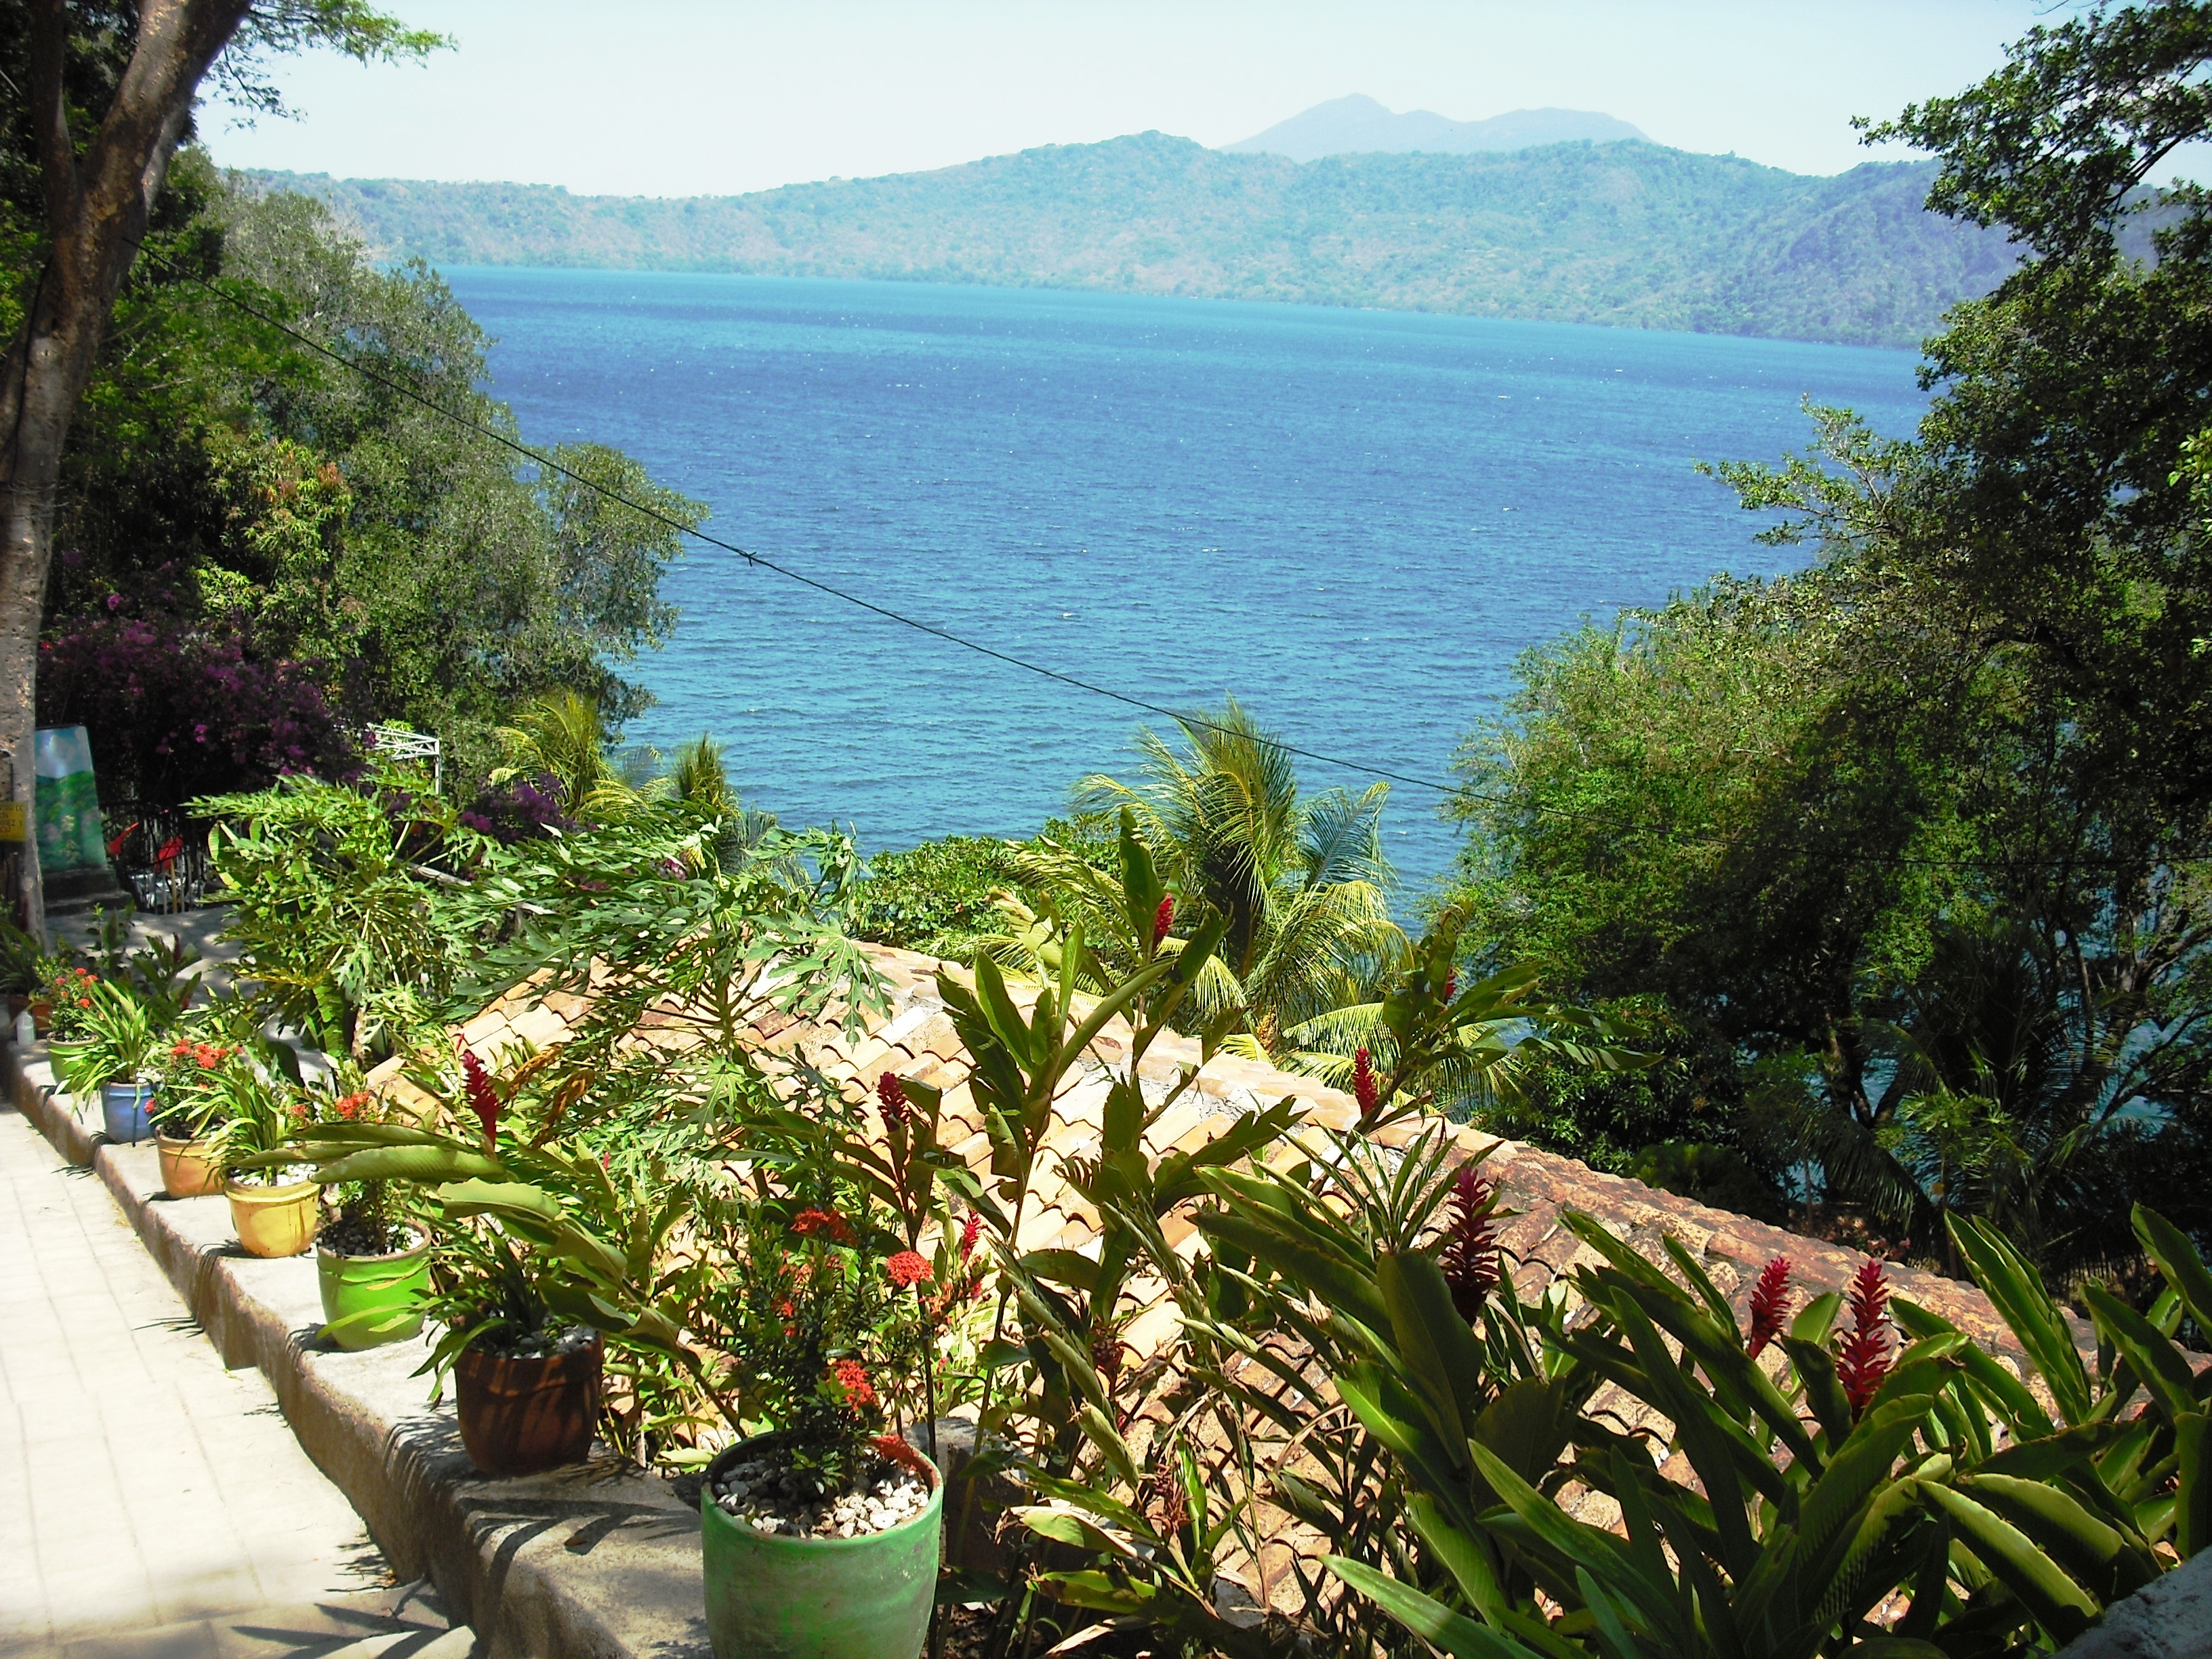 Lake Apoyo in Nicaragua